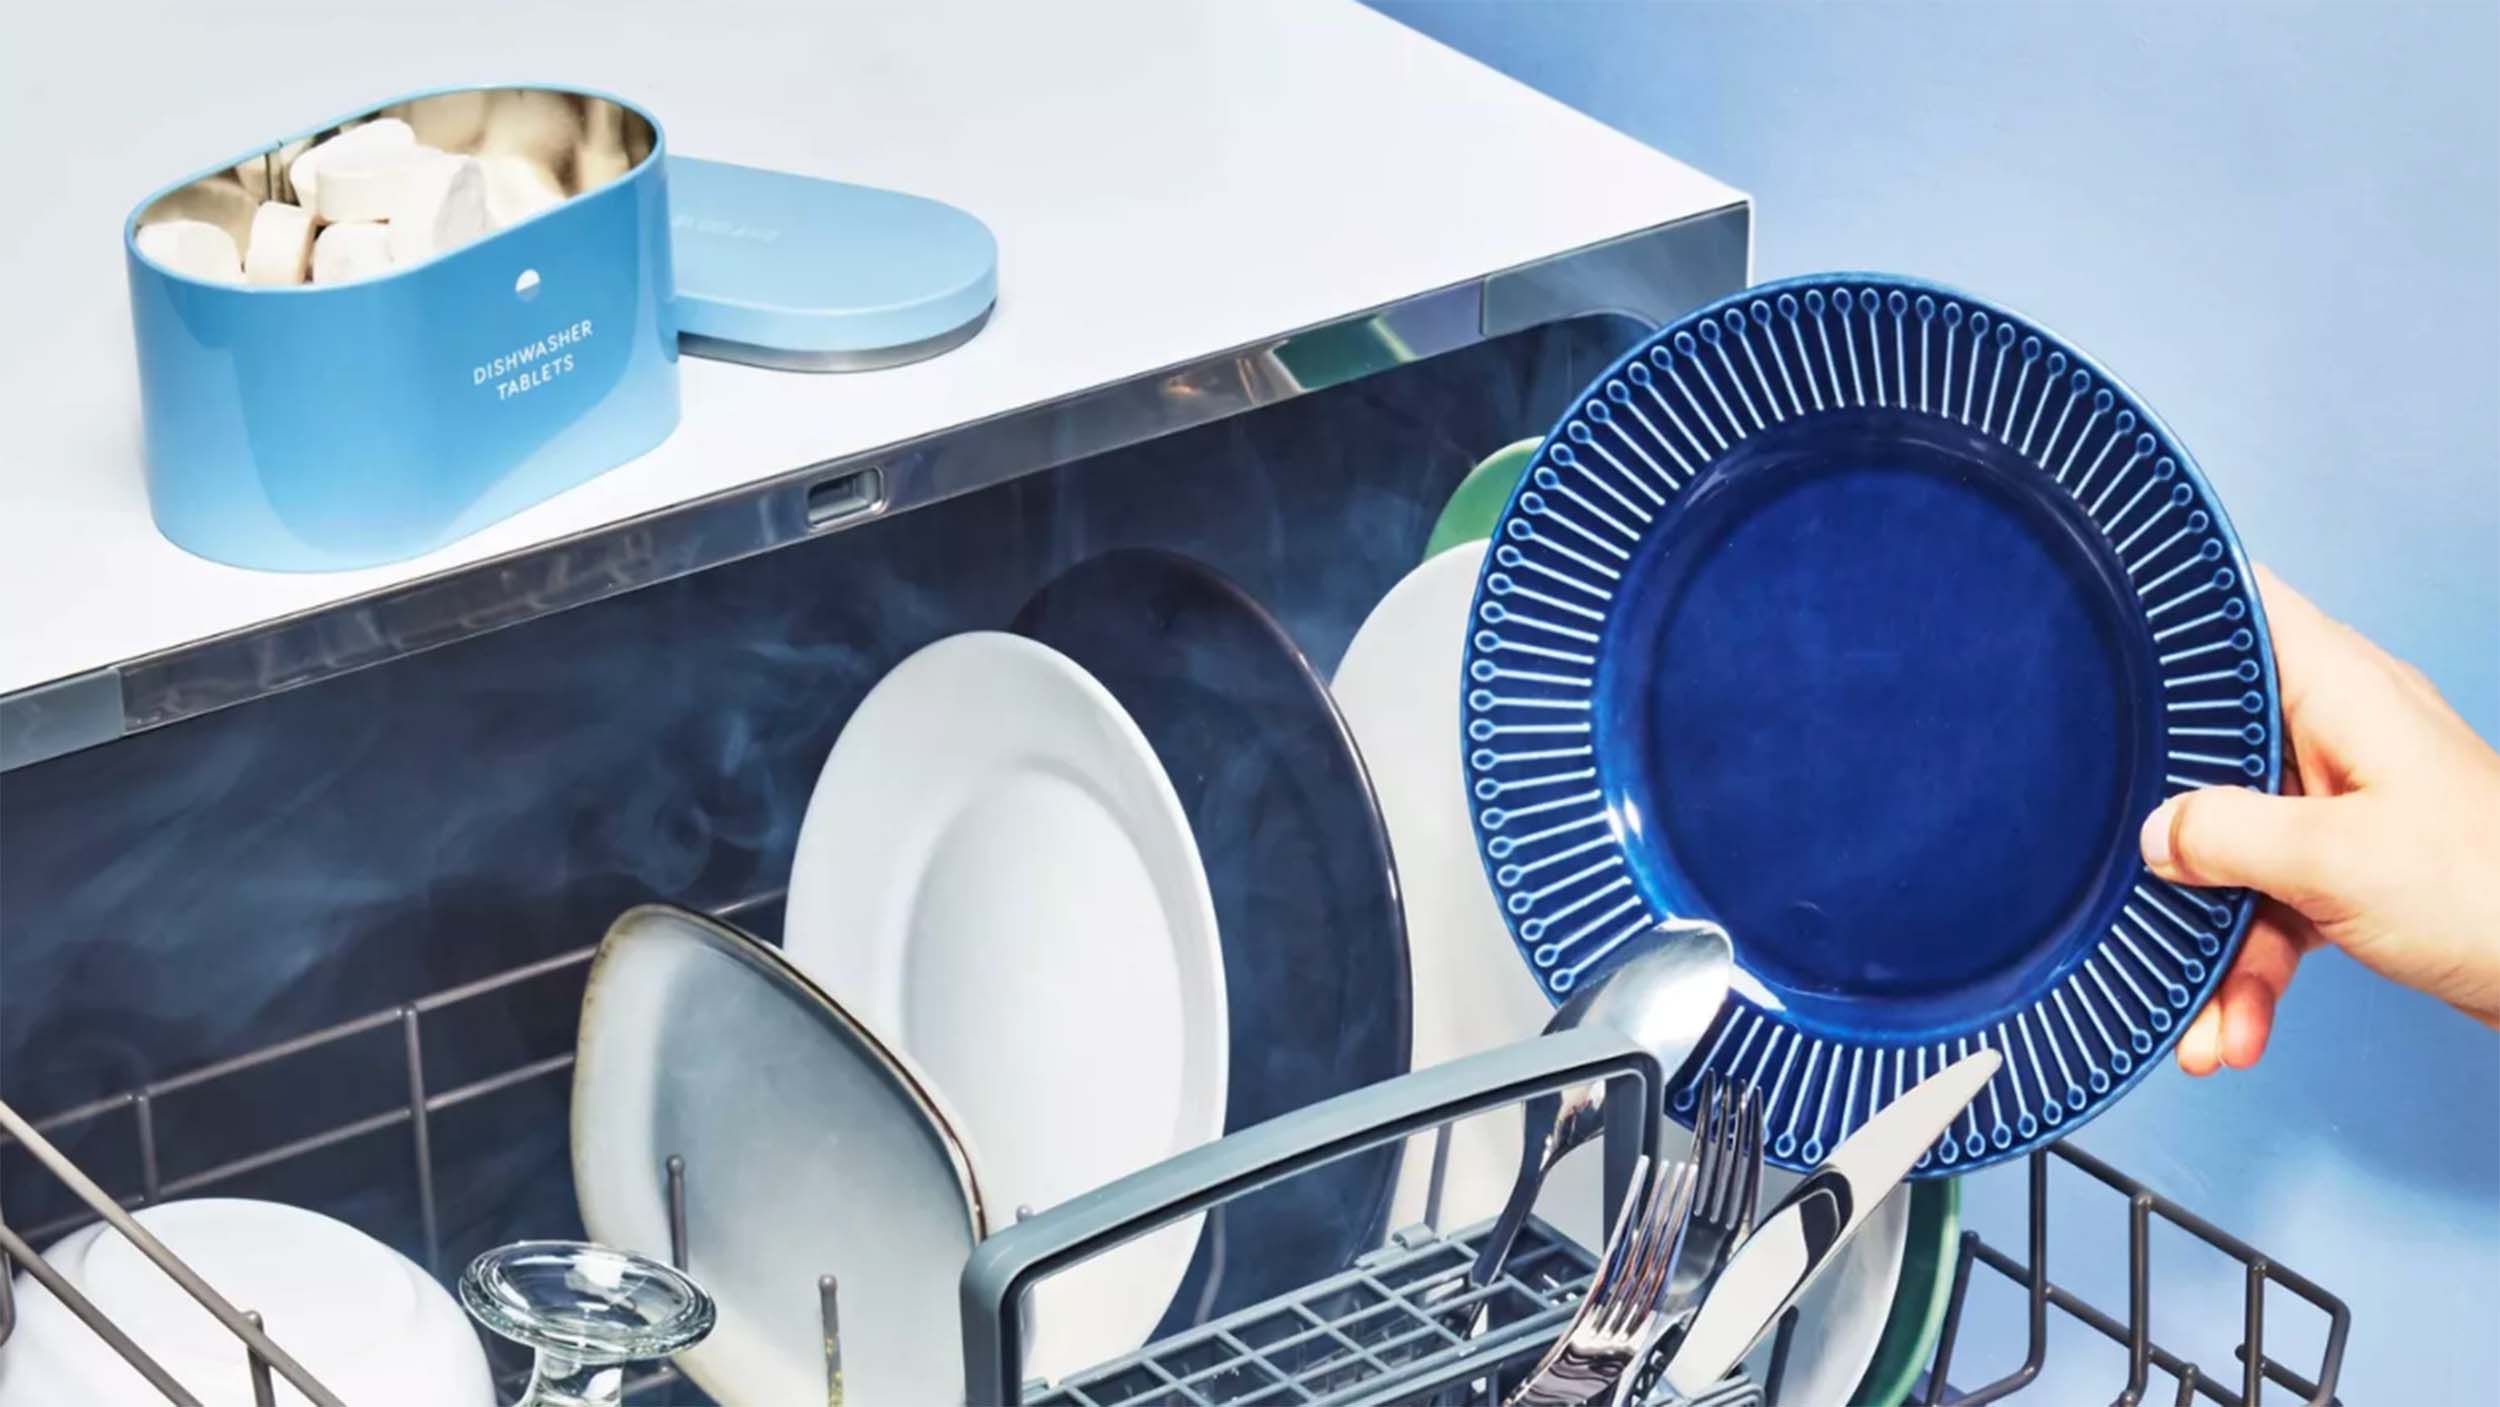 10 Dishwashing Hacks to Effectively & Sustainably Wash Dishes